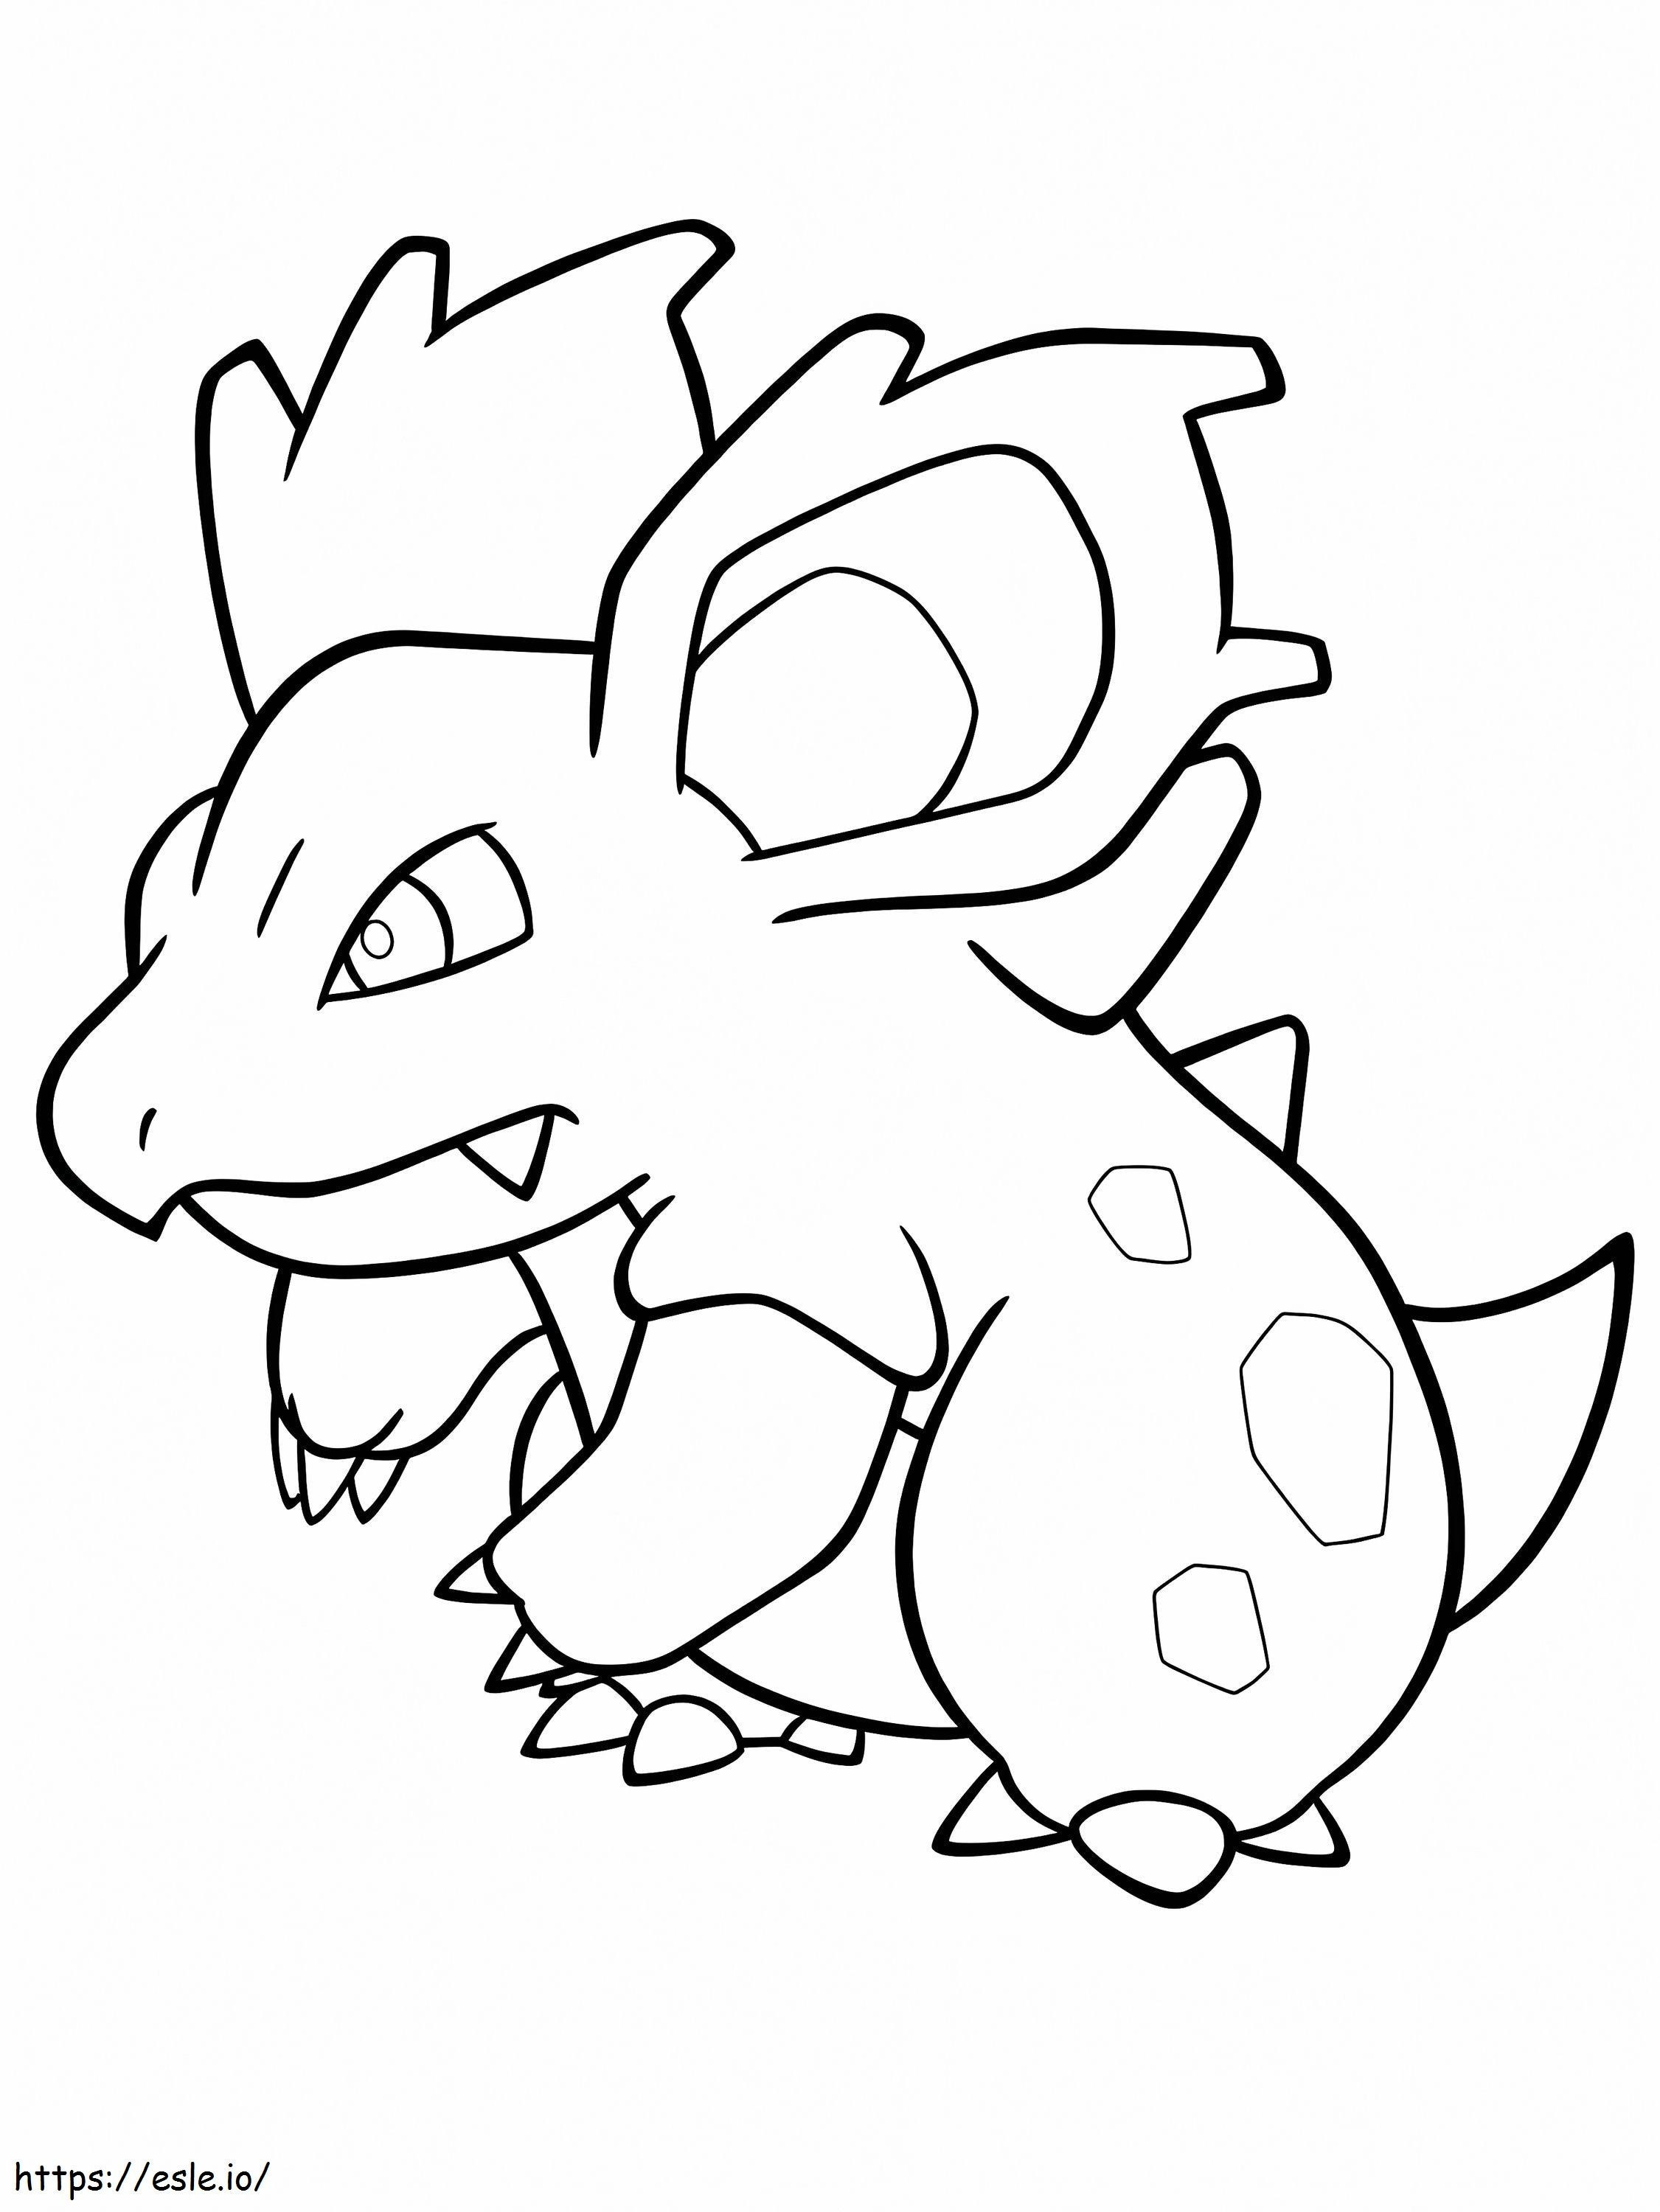 Pokémon Nidorina coloring page